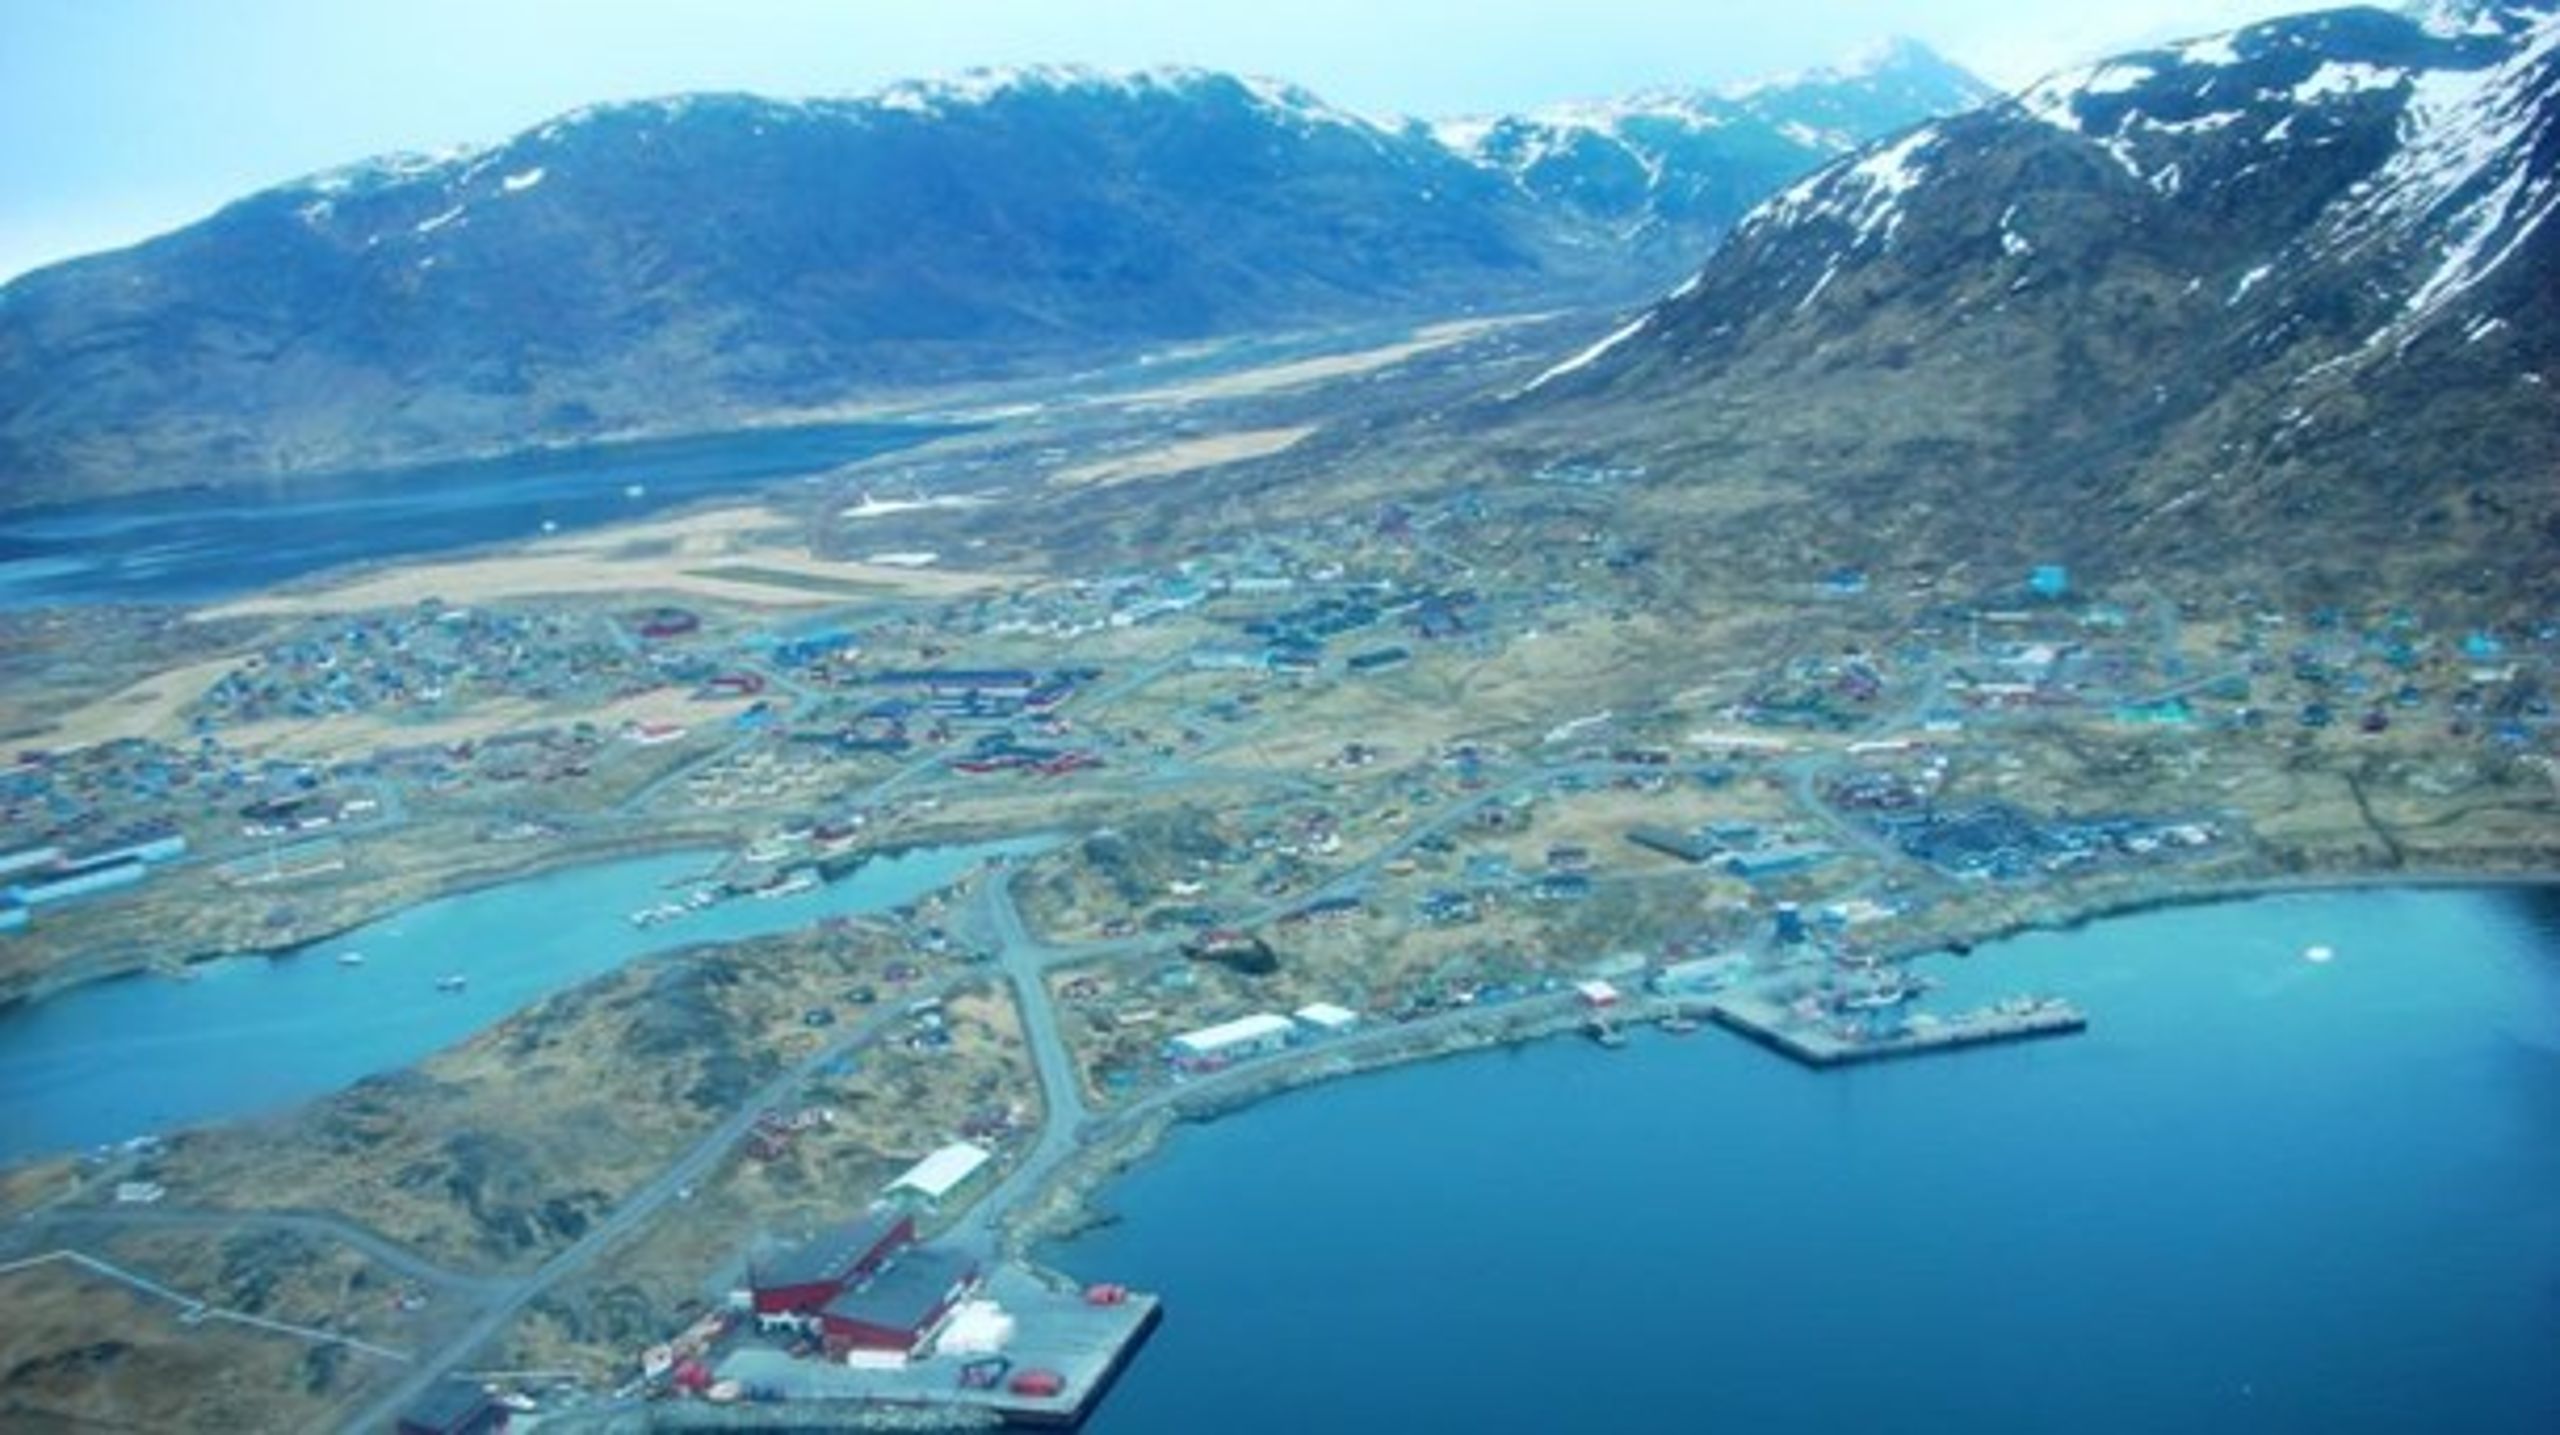 Kvanefjeld i Grønland, hvor et af tidens mest omdiskuterede mineprojekter er på vej. Det hele kan gøres langt grønnere ved genanvendelse af ressourcer, skriver Nauja Lynge.